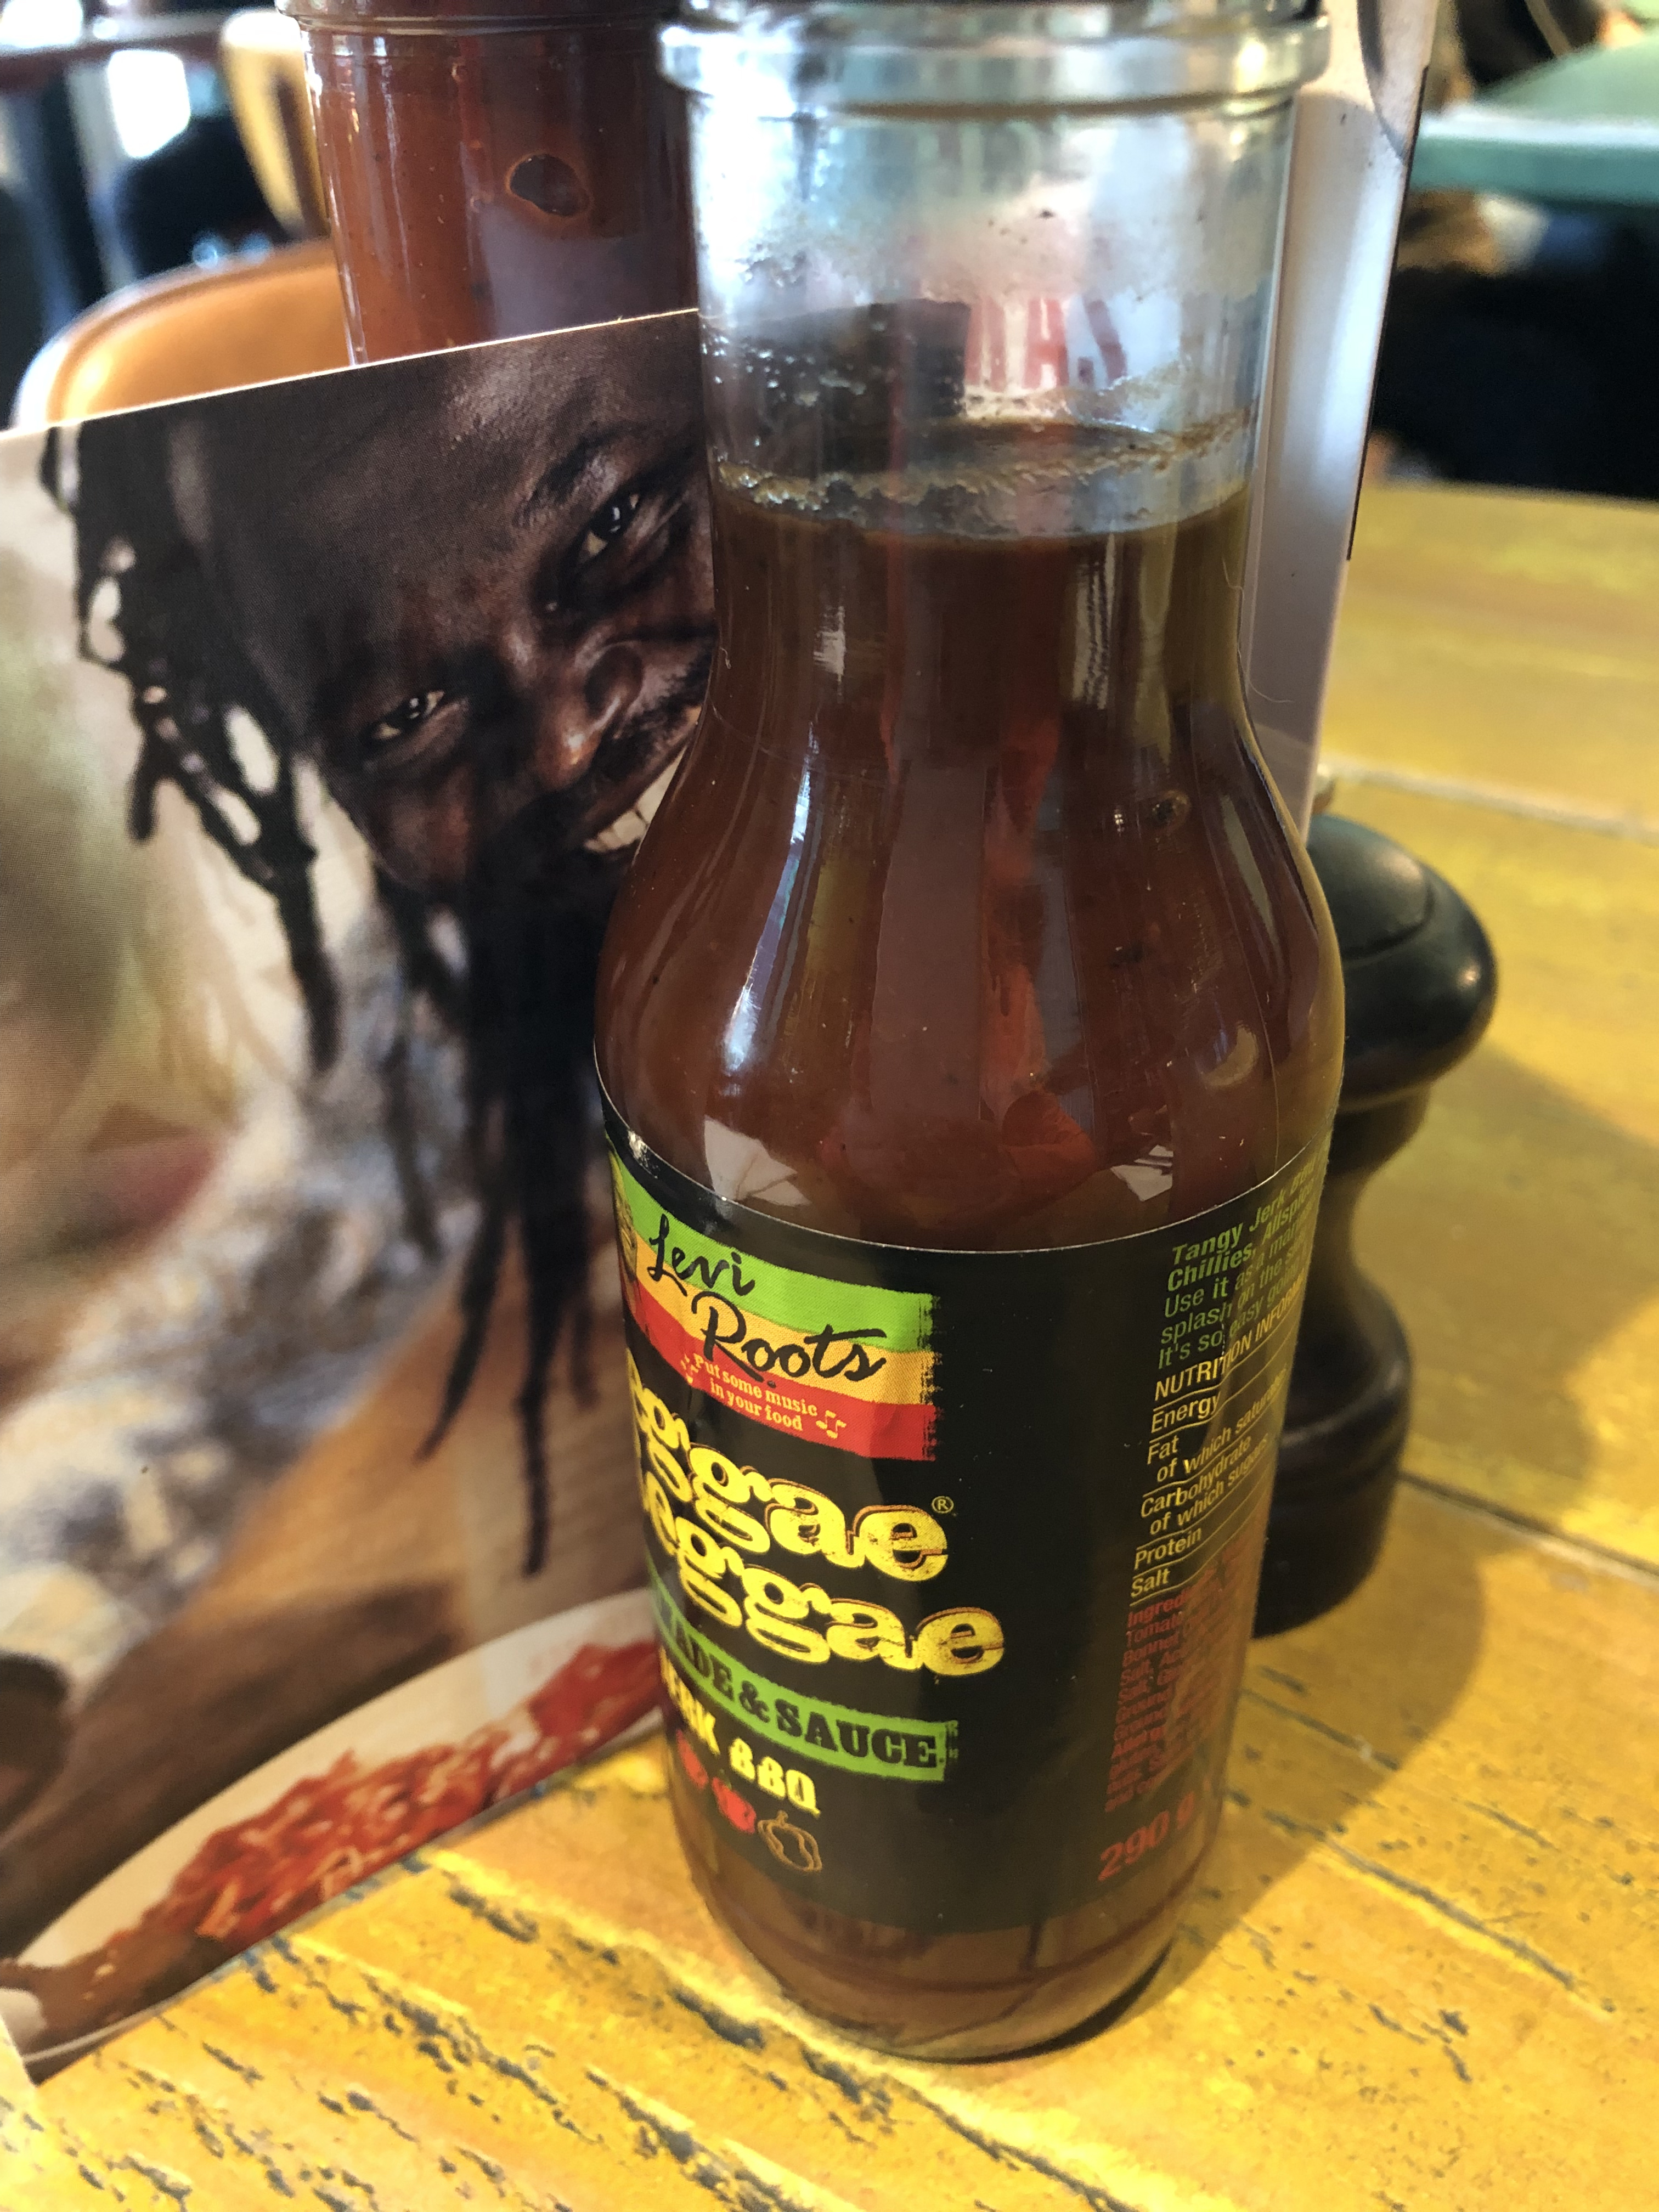 Levi Roots regae regae sauce